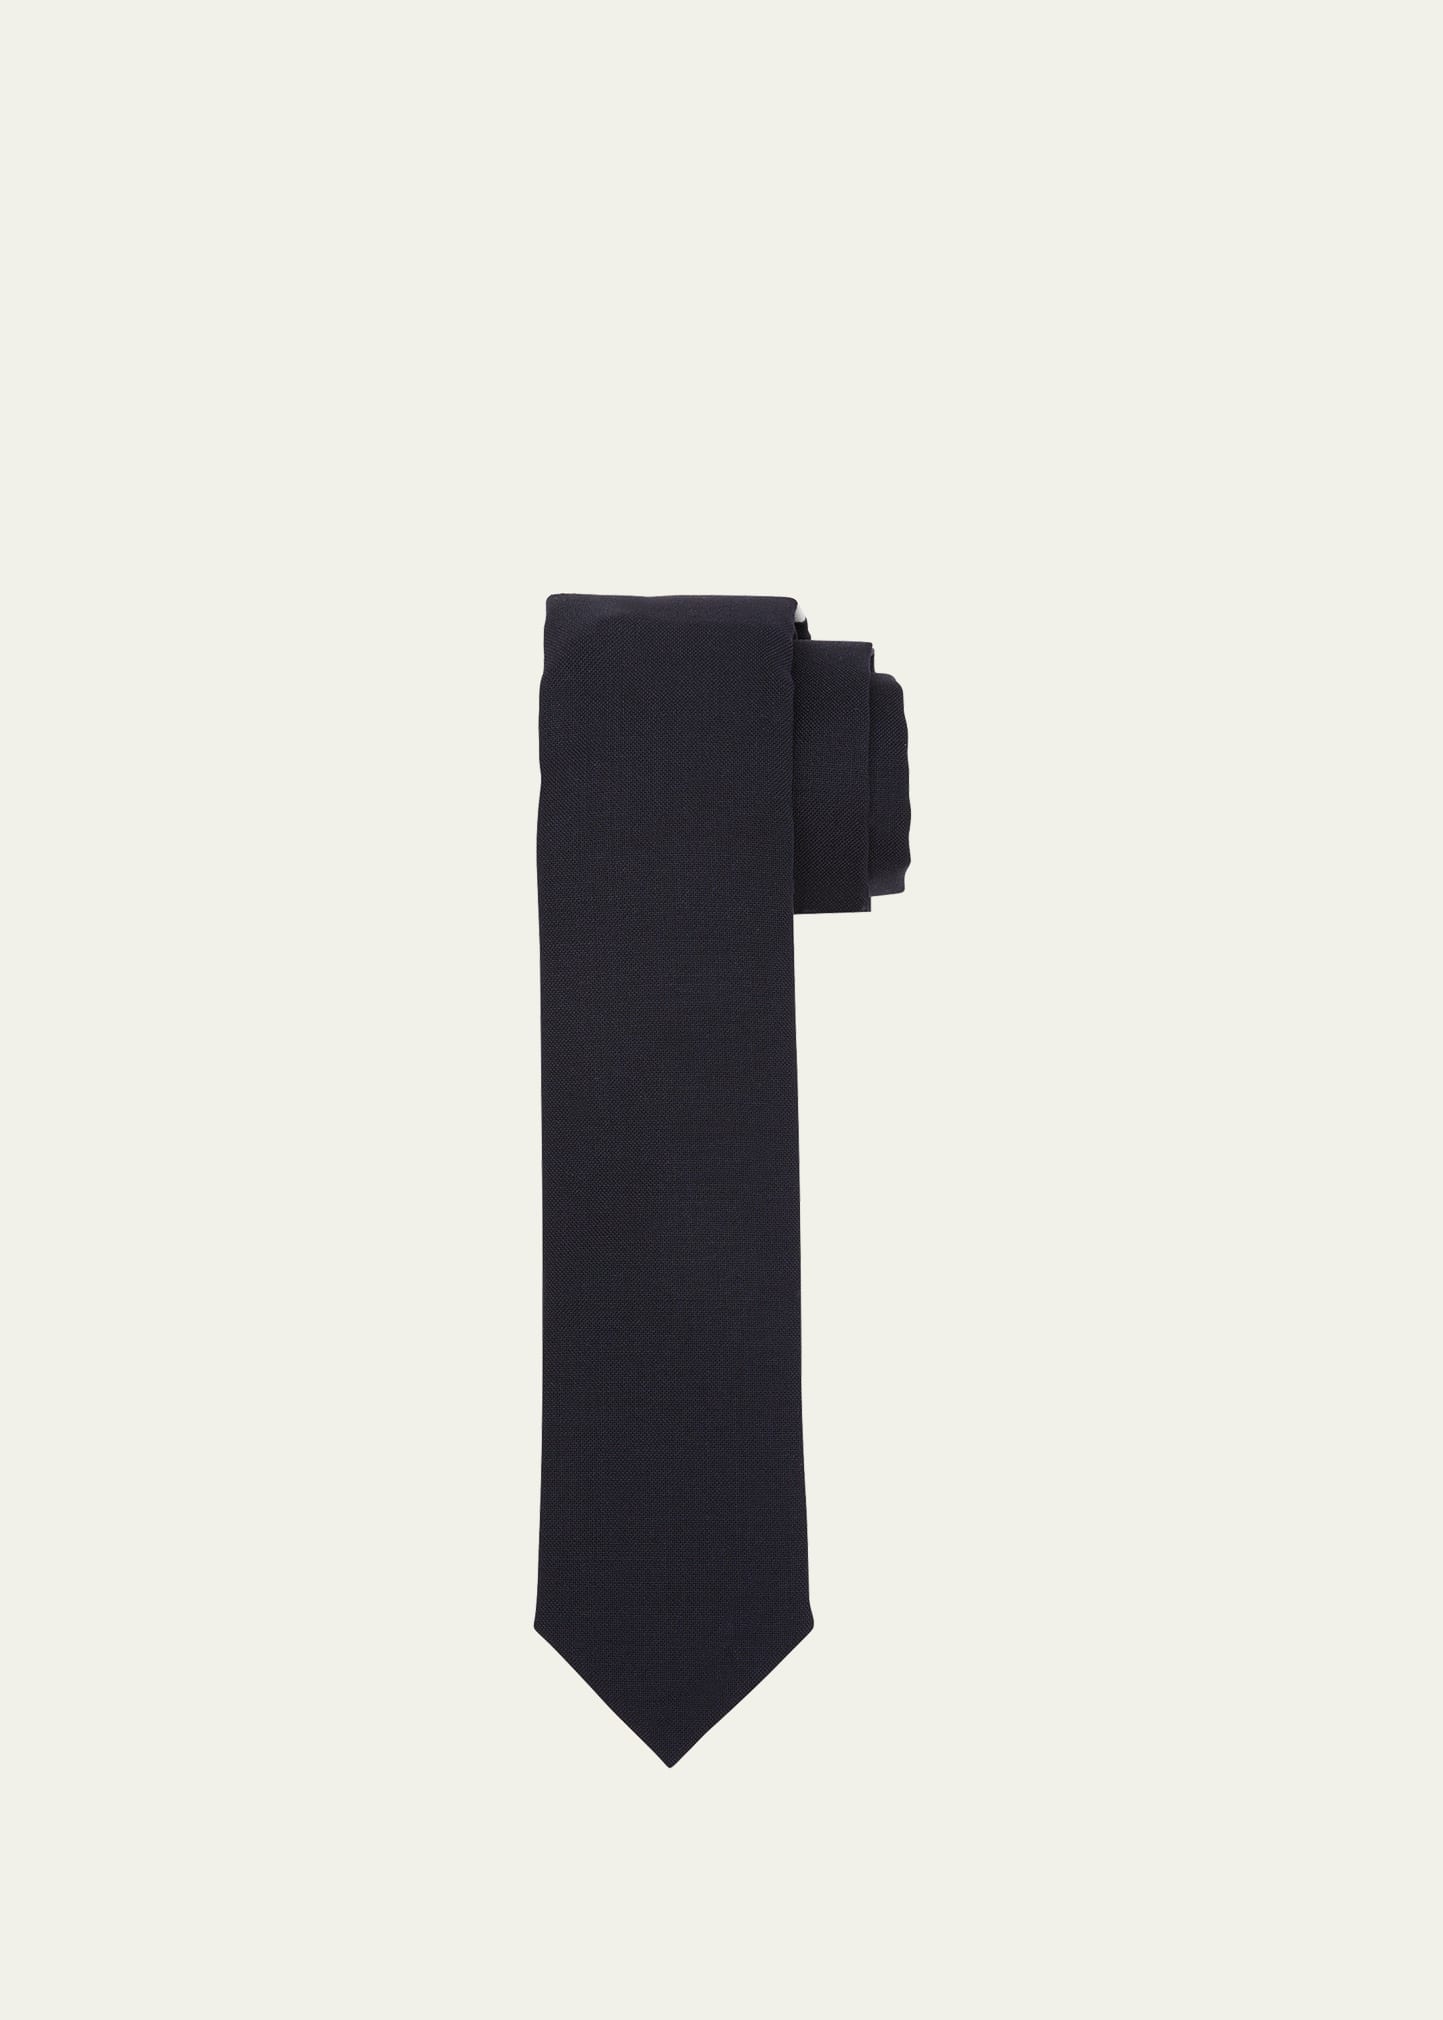 Men's Solid Woven Wool Tie